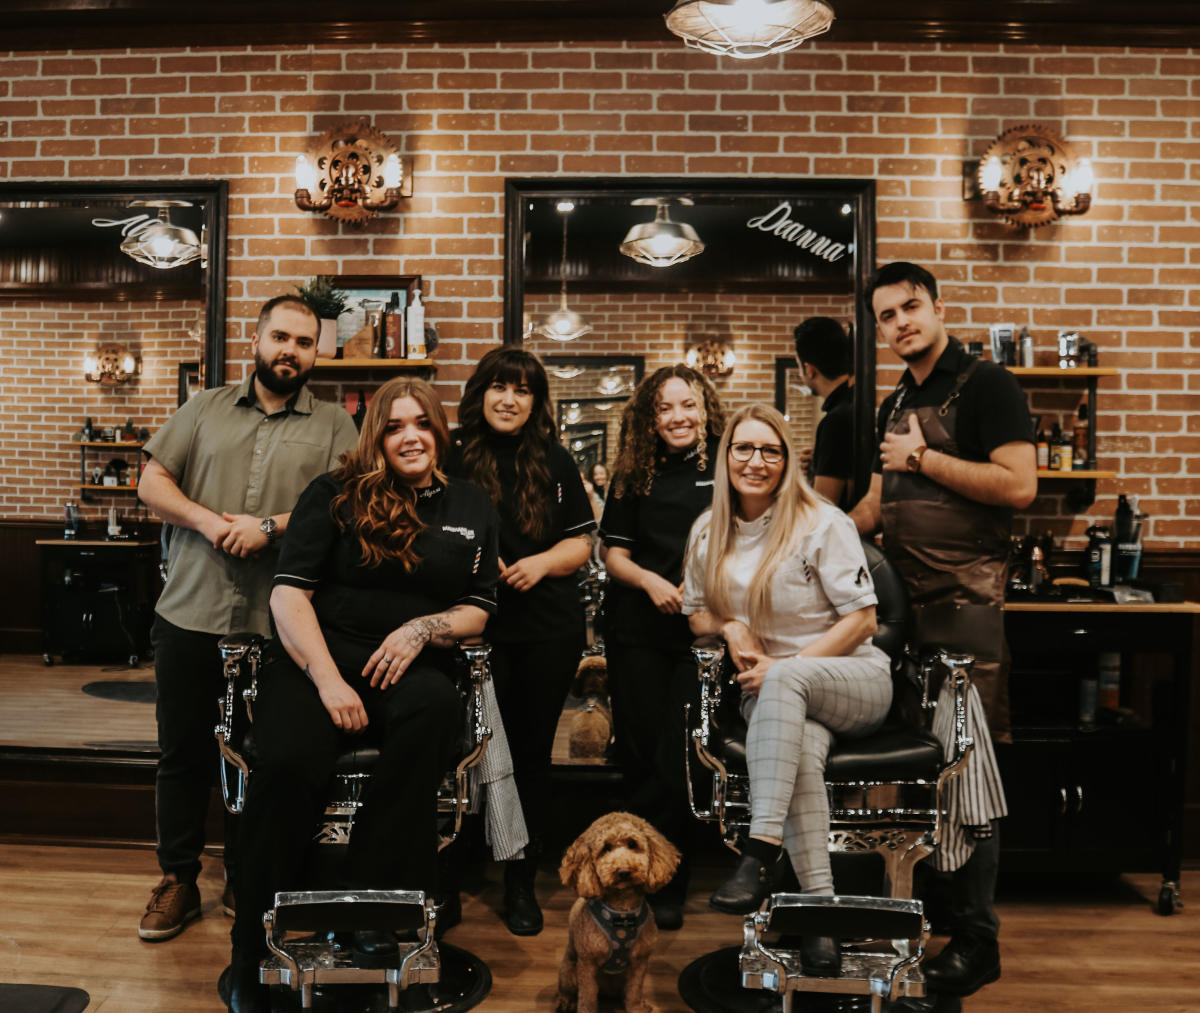 The kamloops haircut team at Manhandler Barbershop